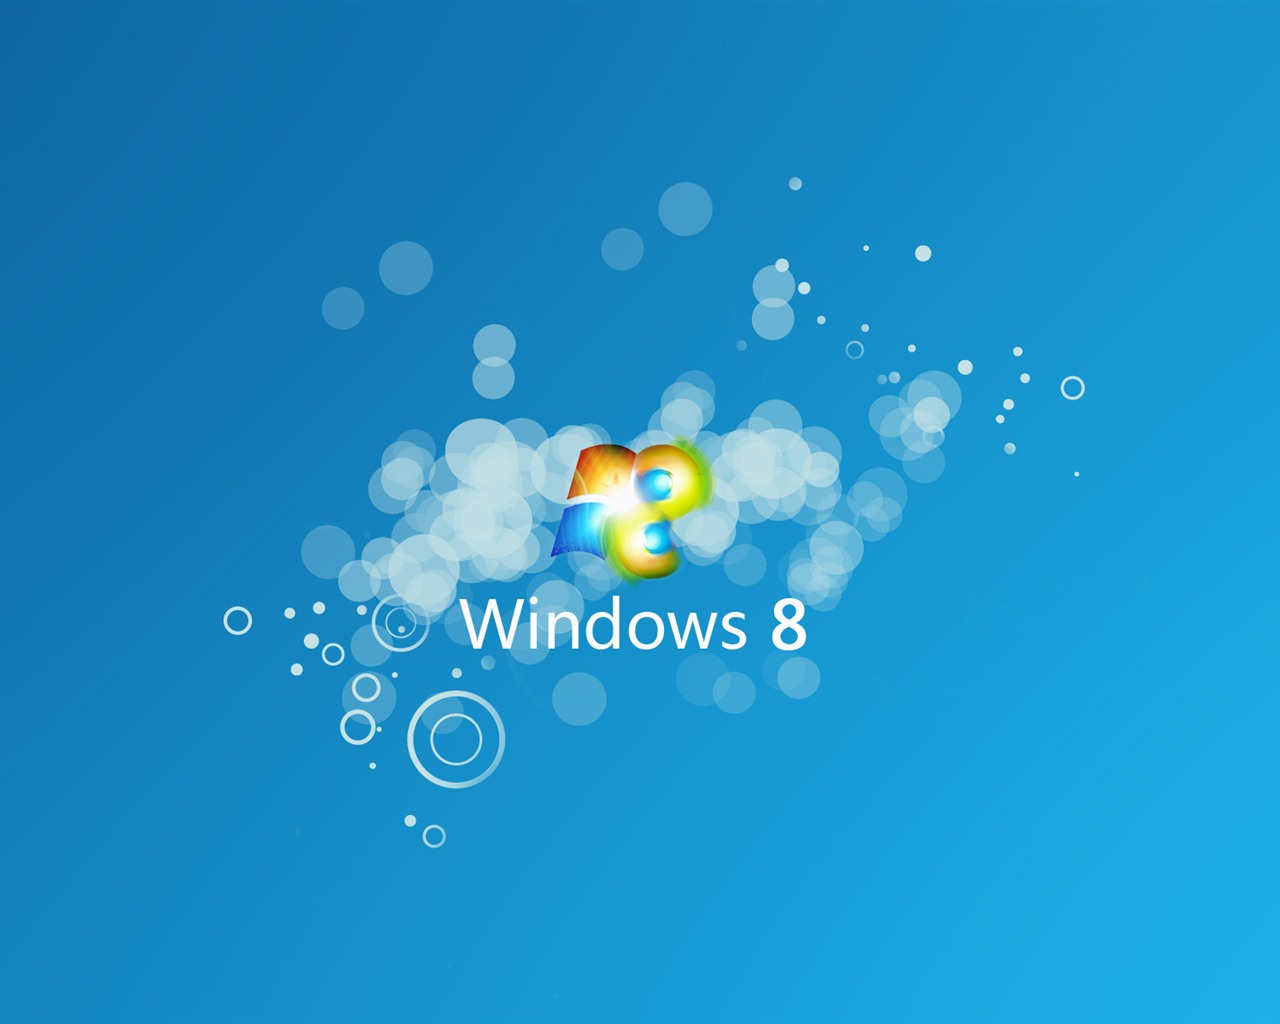 Windows 8 theme wallpaper (1) #9 - 1280x1024